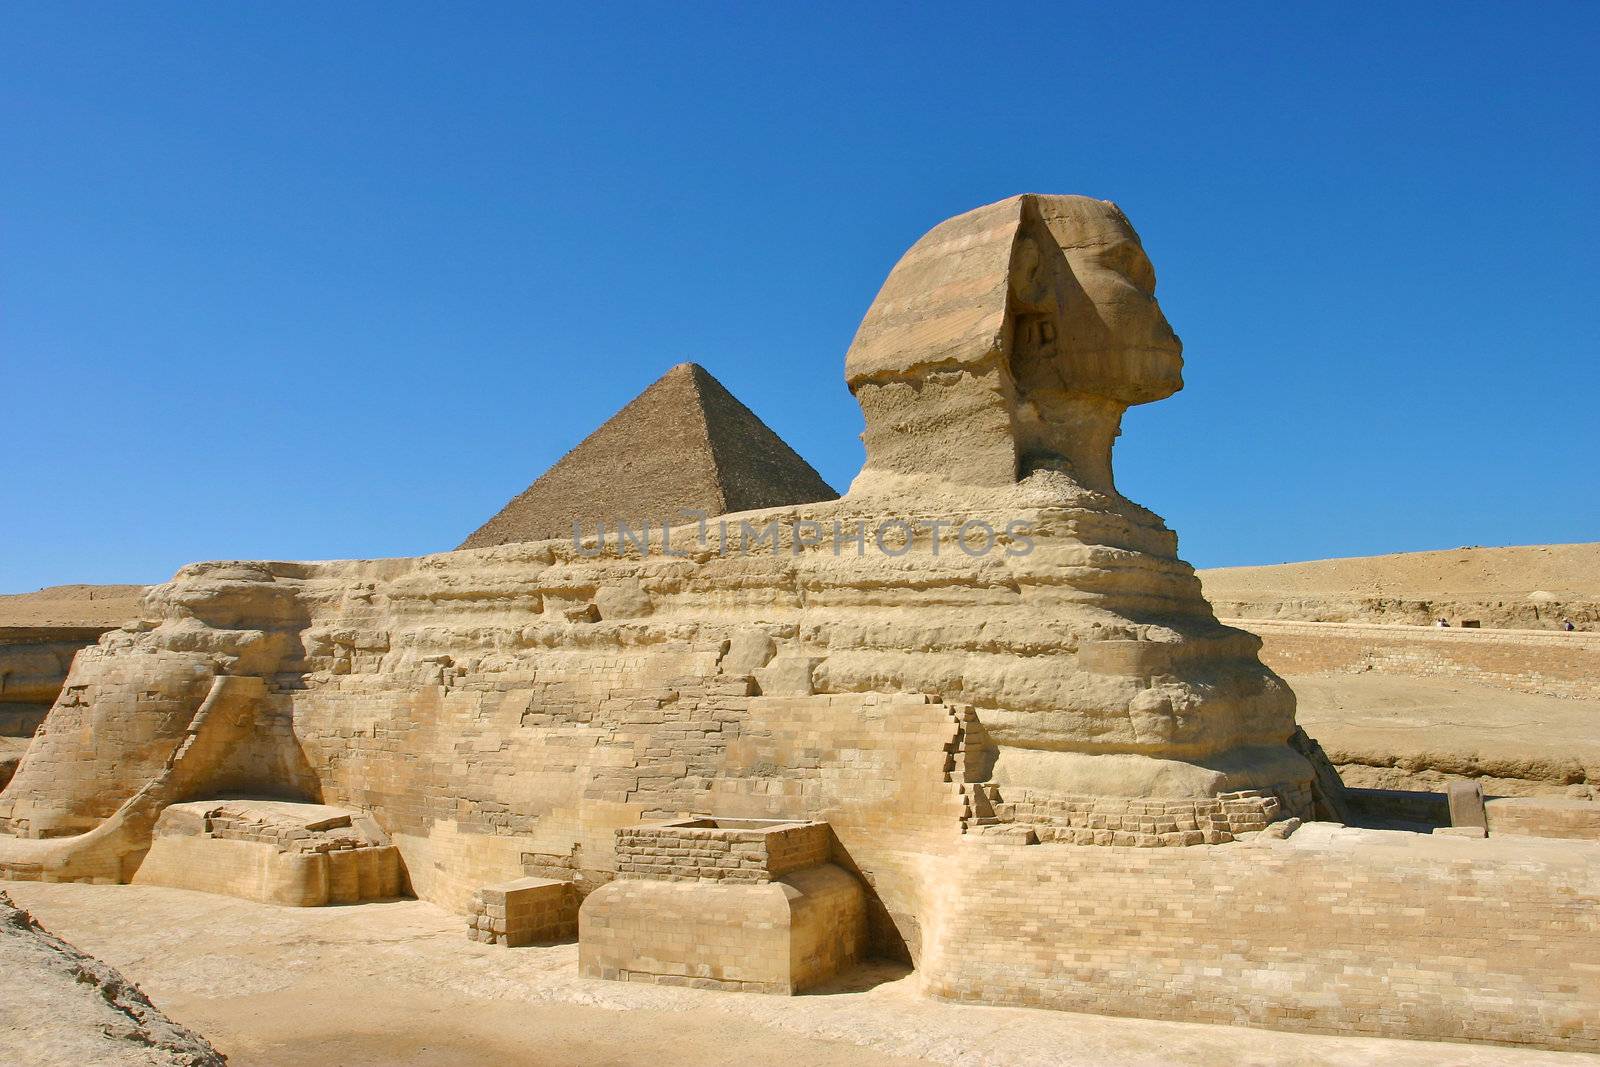 Sphinx in cairo - site of giza